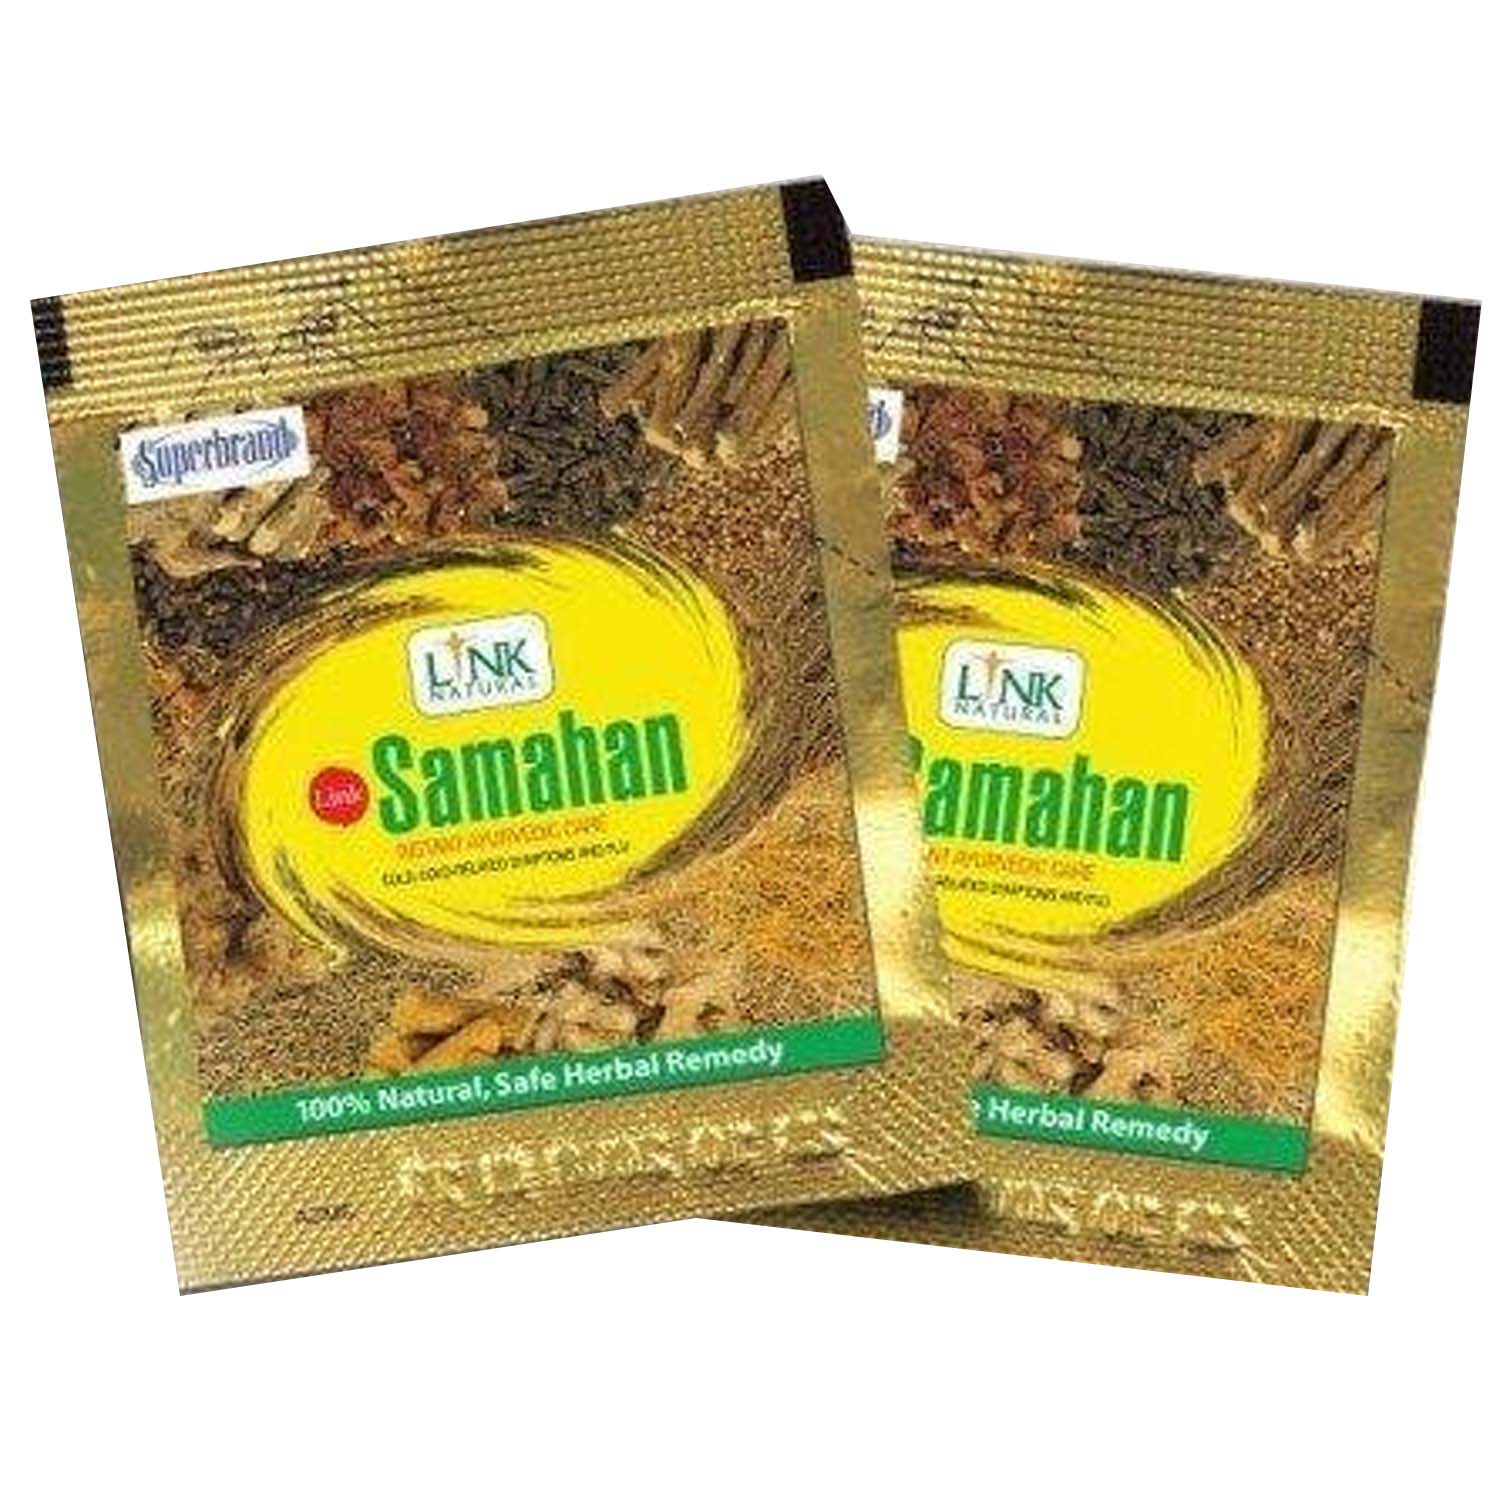 Buy Link Naturals Samahan, 4 gm Online